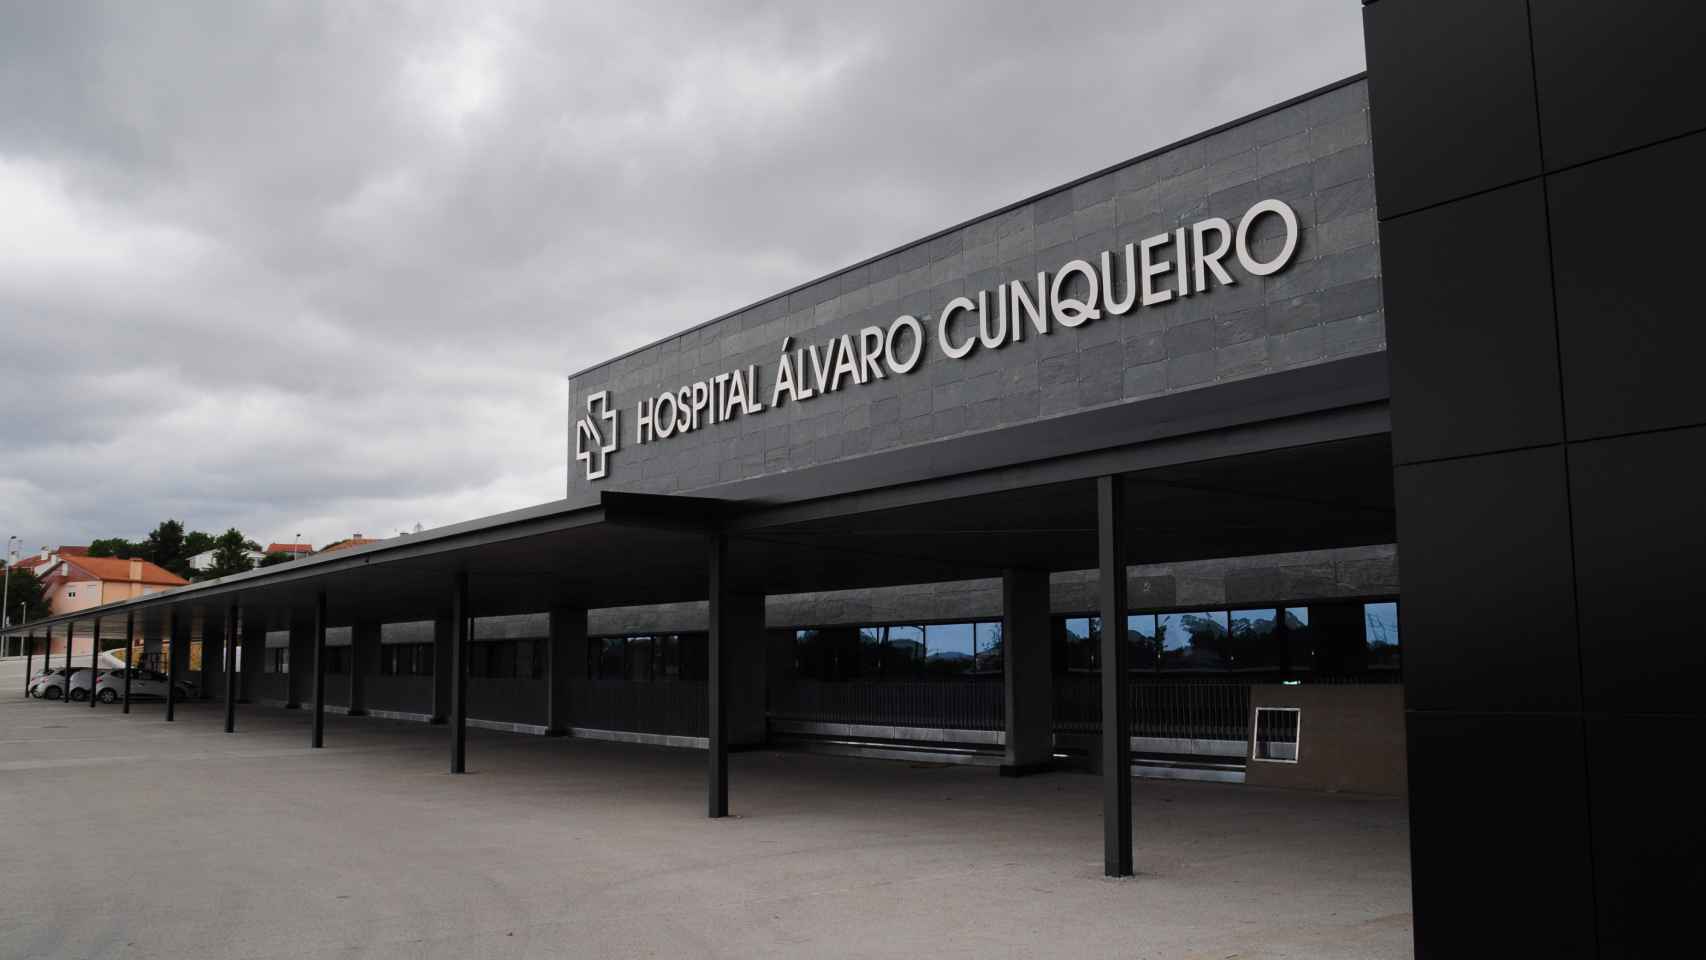 Entrada principal del Hospital Álvaro Cunqueiro / HOSPITAL ÁLVARO CUNQUEIRO